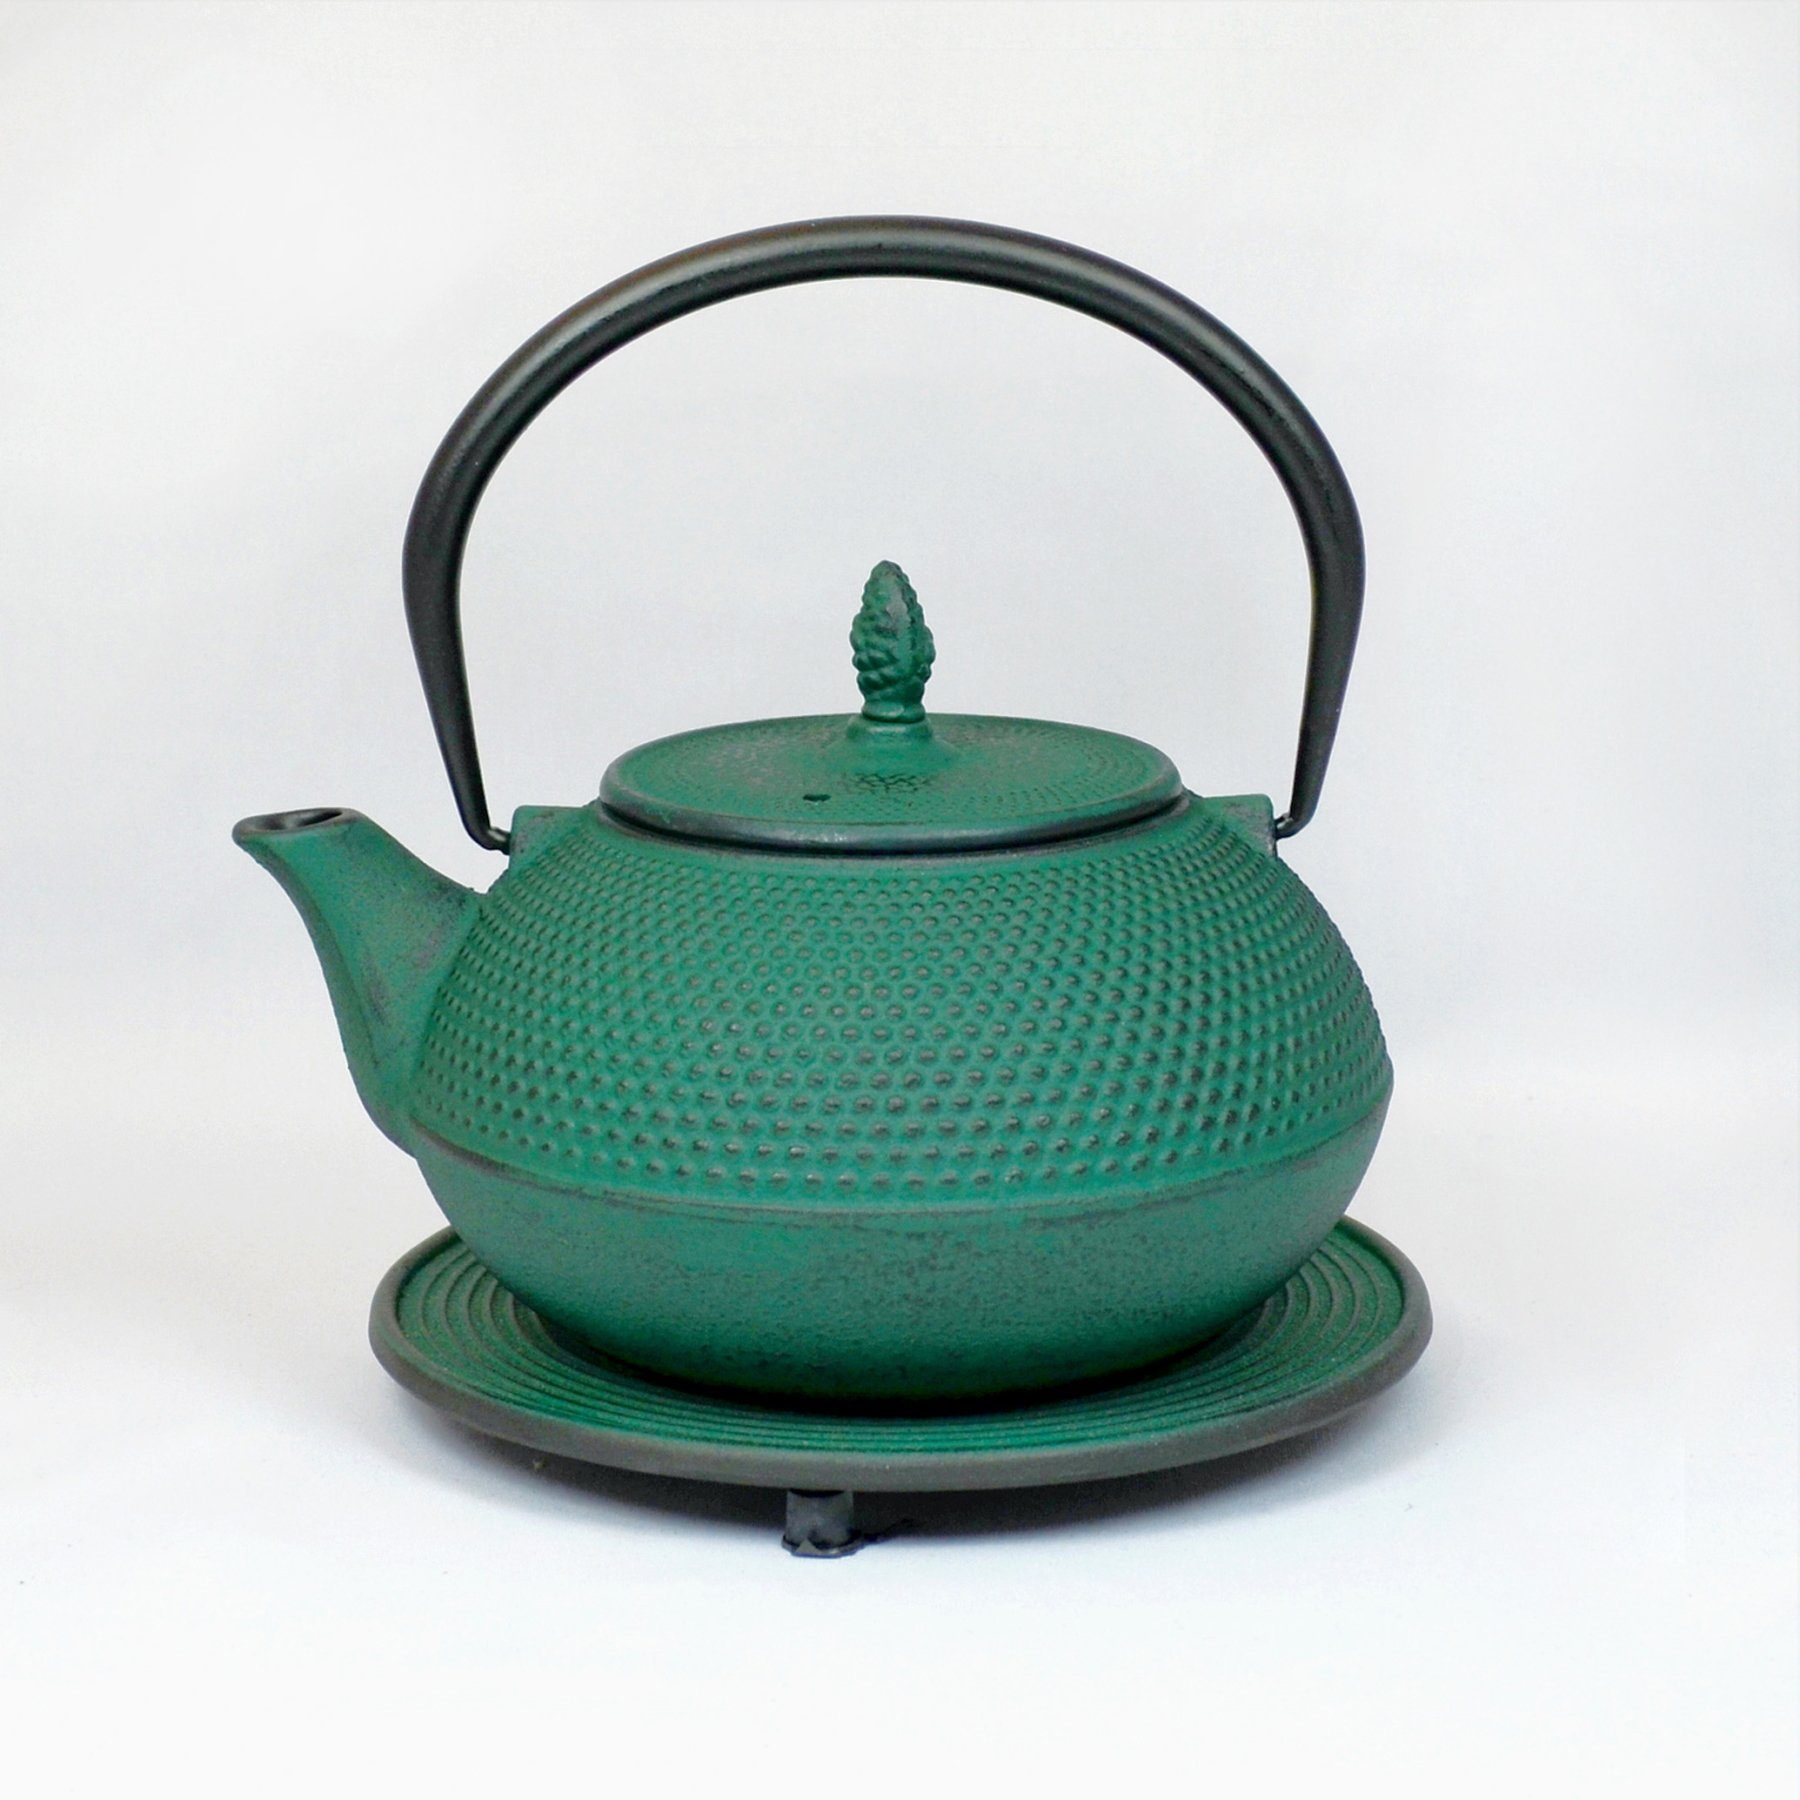 JA-UNENDLICH Teekanne Basic grün, 1.2 l, aus Gusseisen handgefertigt im Sandgussverfahren, innen emailliert | Teekannen